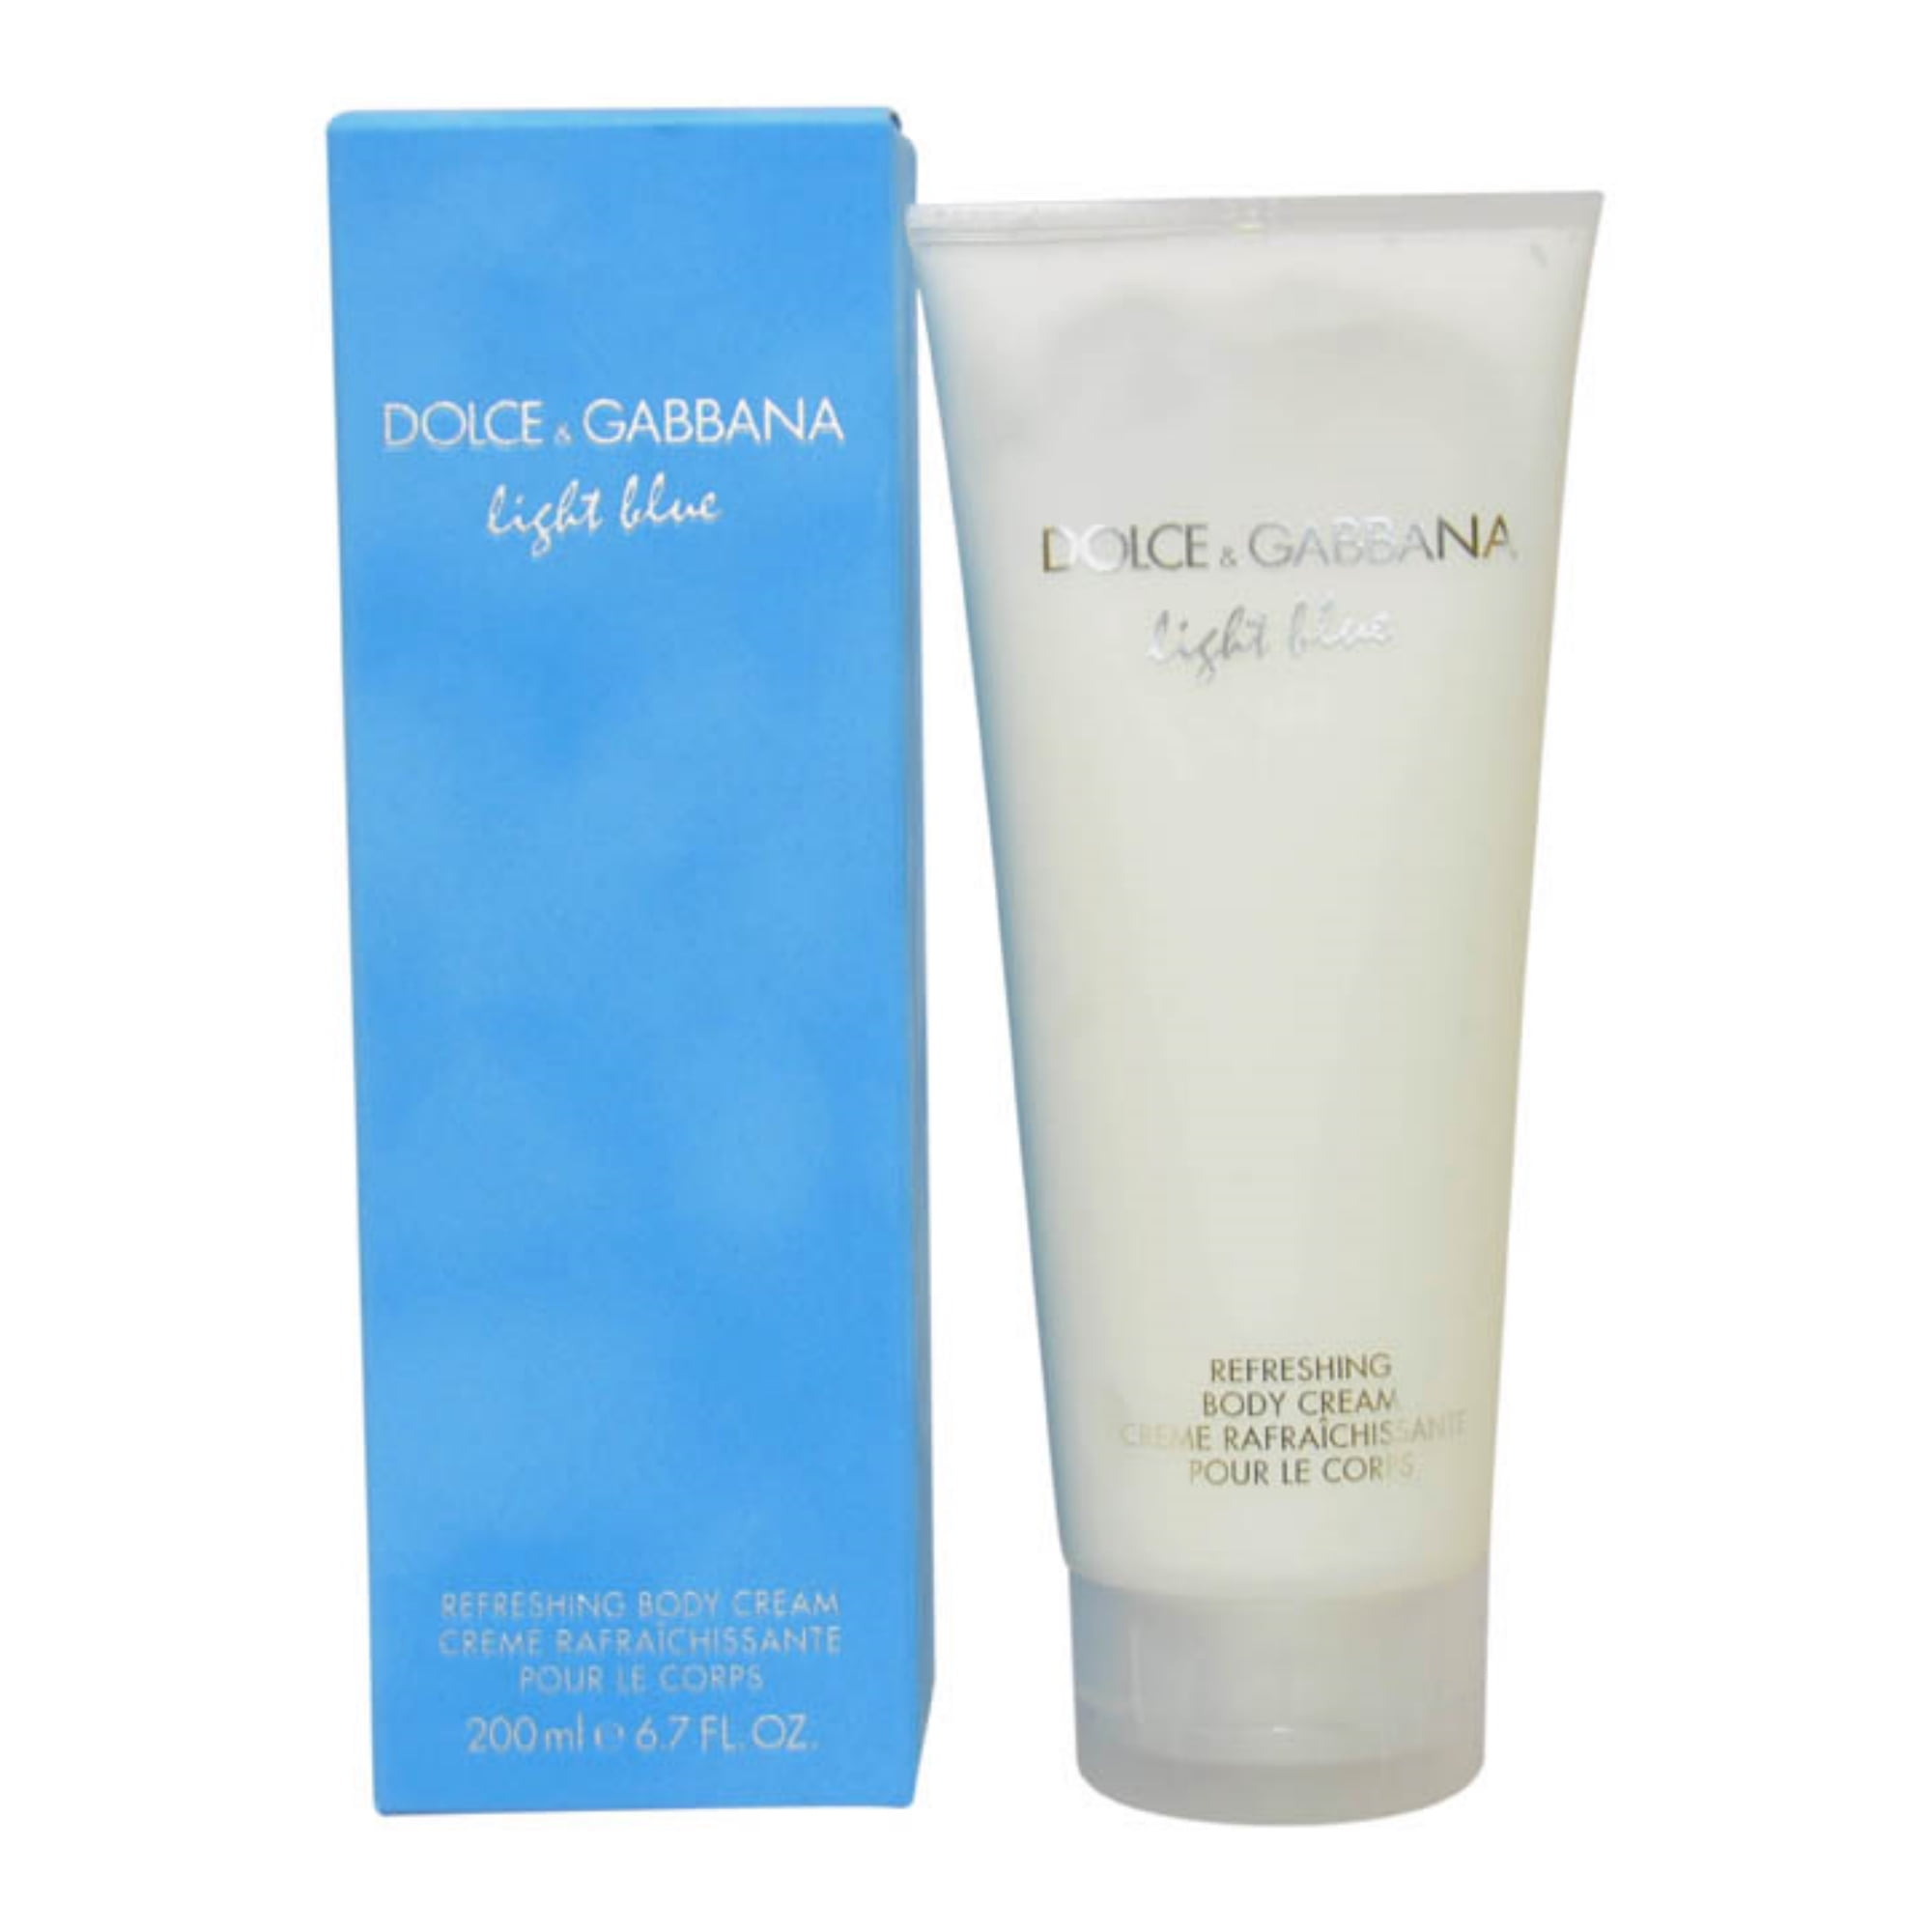 dolce & gabbana light blue body lotion